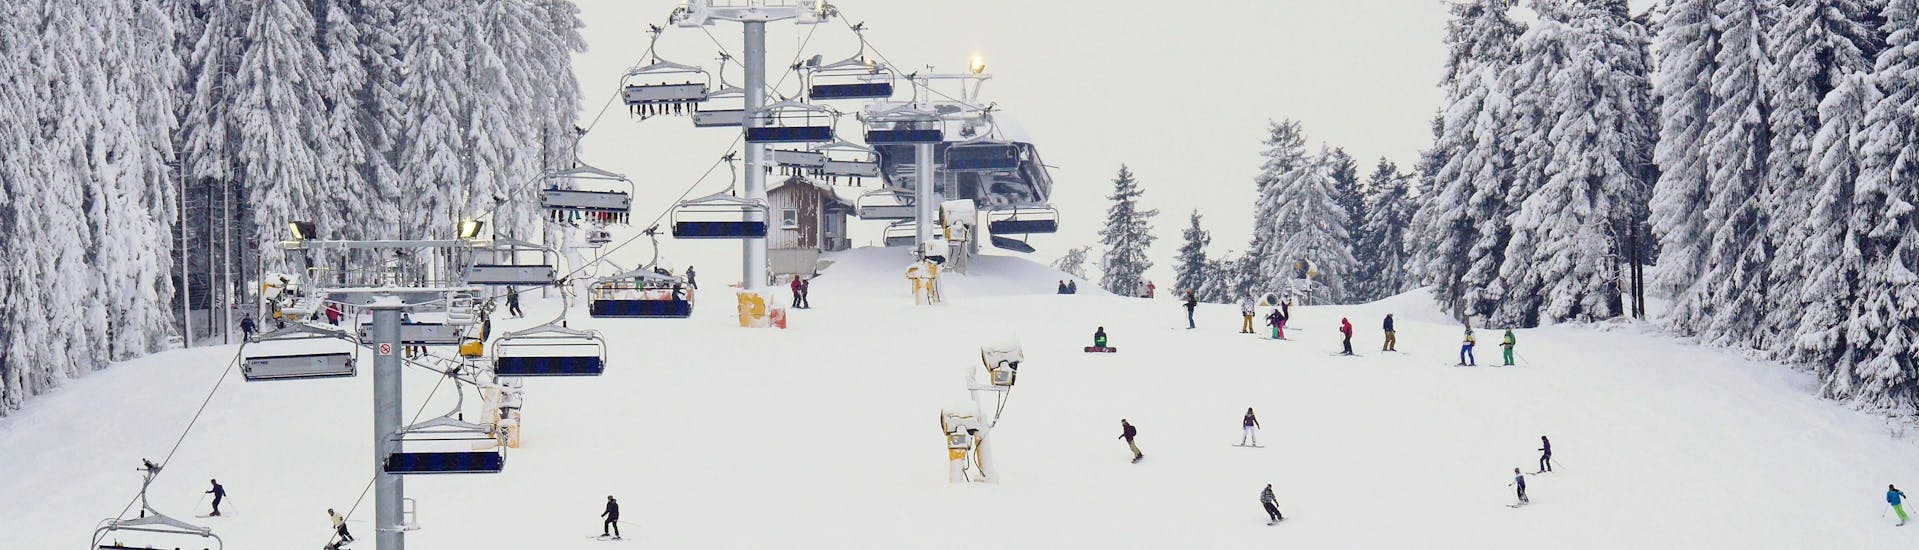 Ein Bild einer viel befahrenen Skipiste in Winterberg, wo örtliche Skischulen eine Vielzahl an Skikursen für angehende Skifahrer die das Skifahren lernen wollen anbieten.